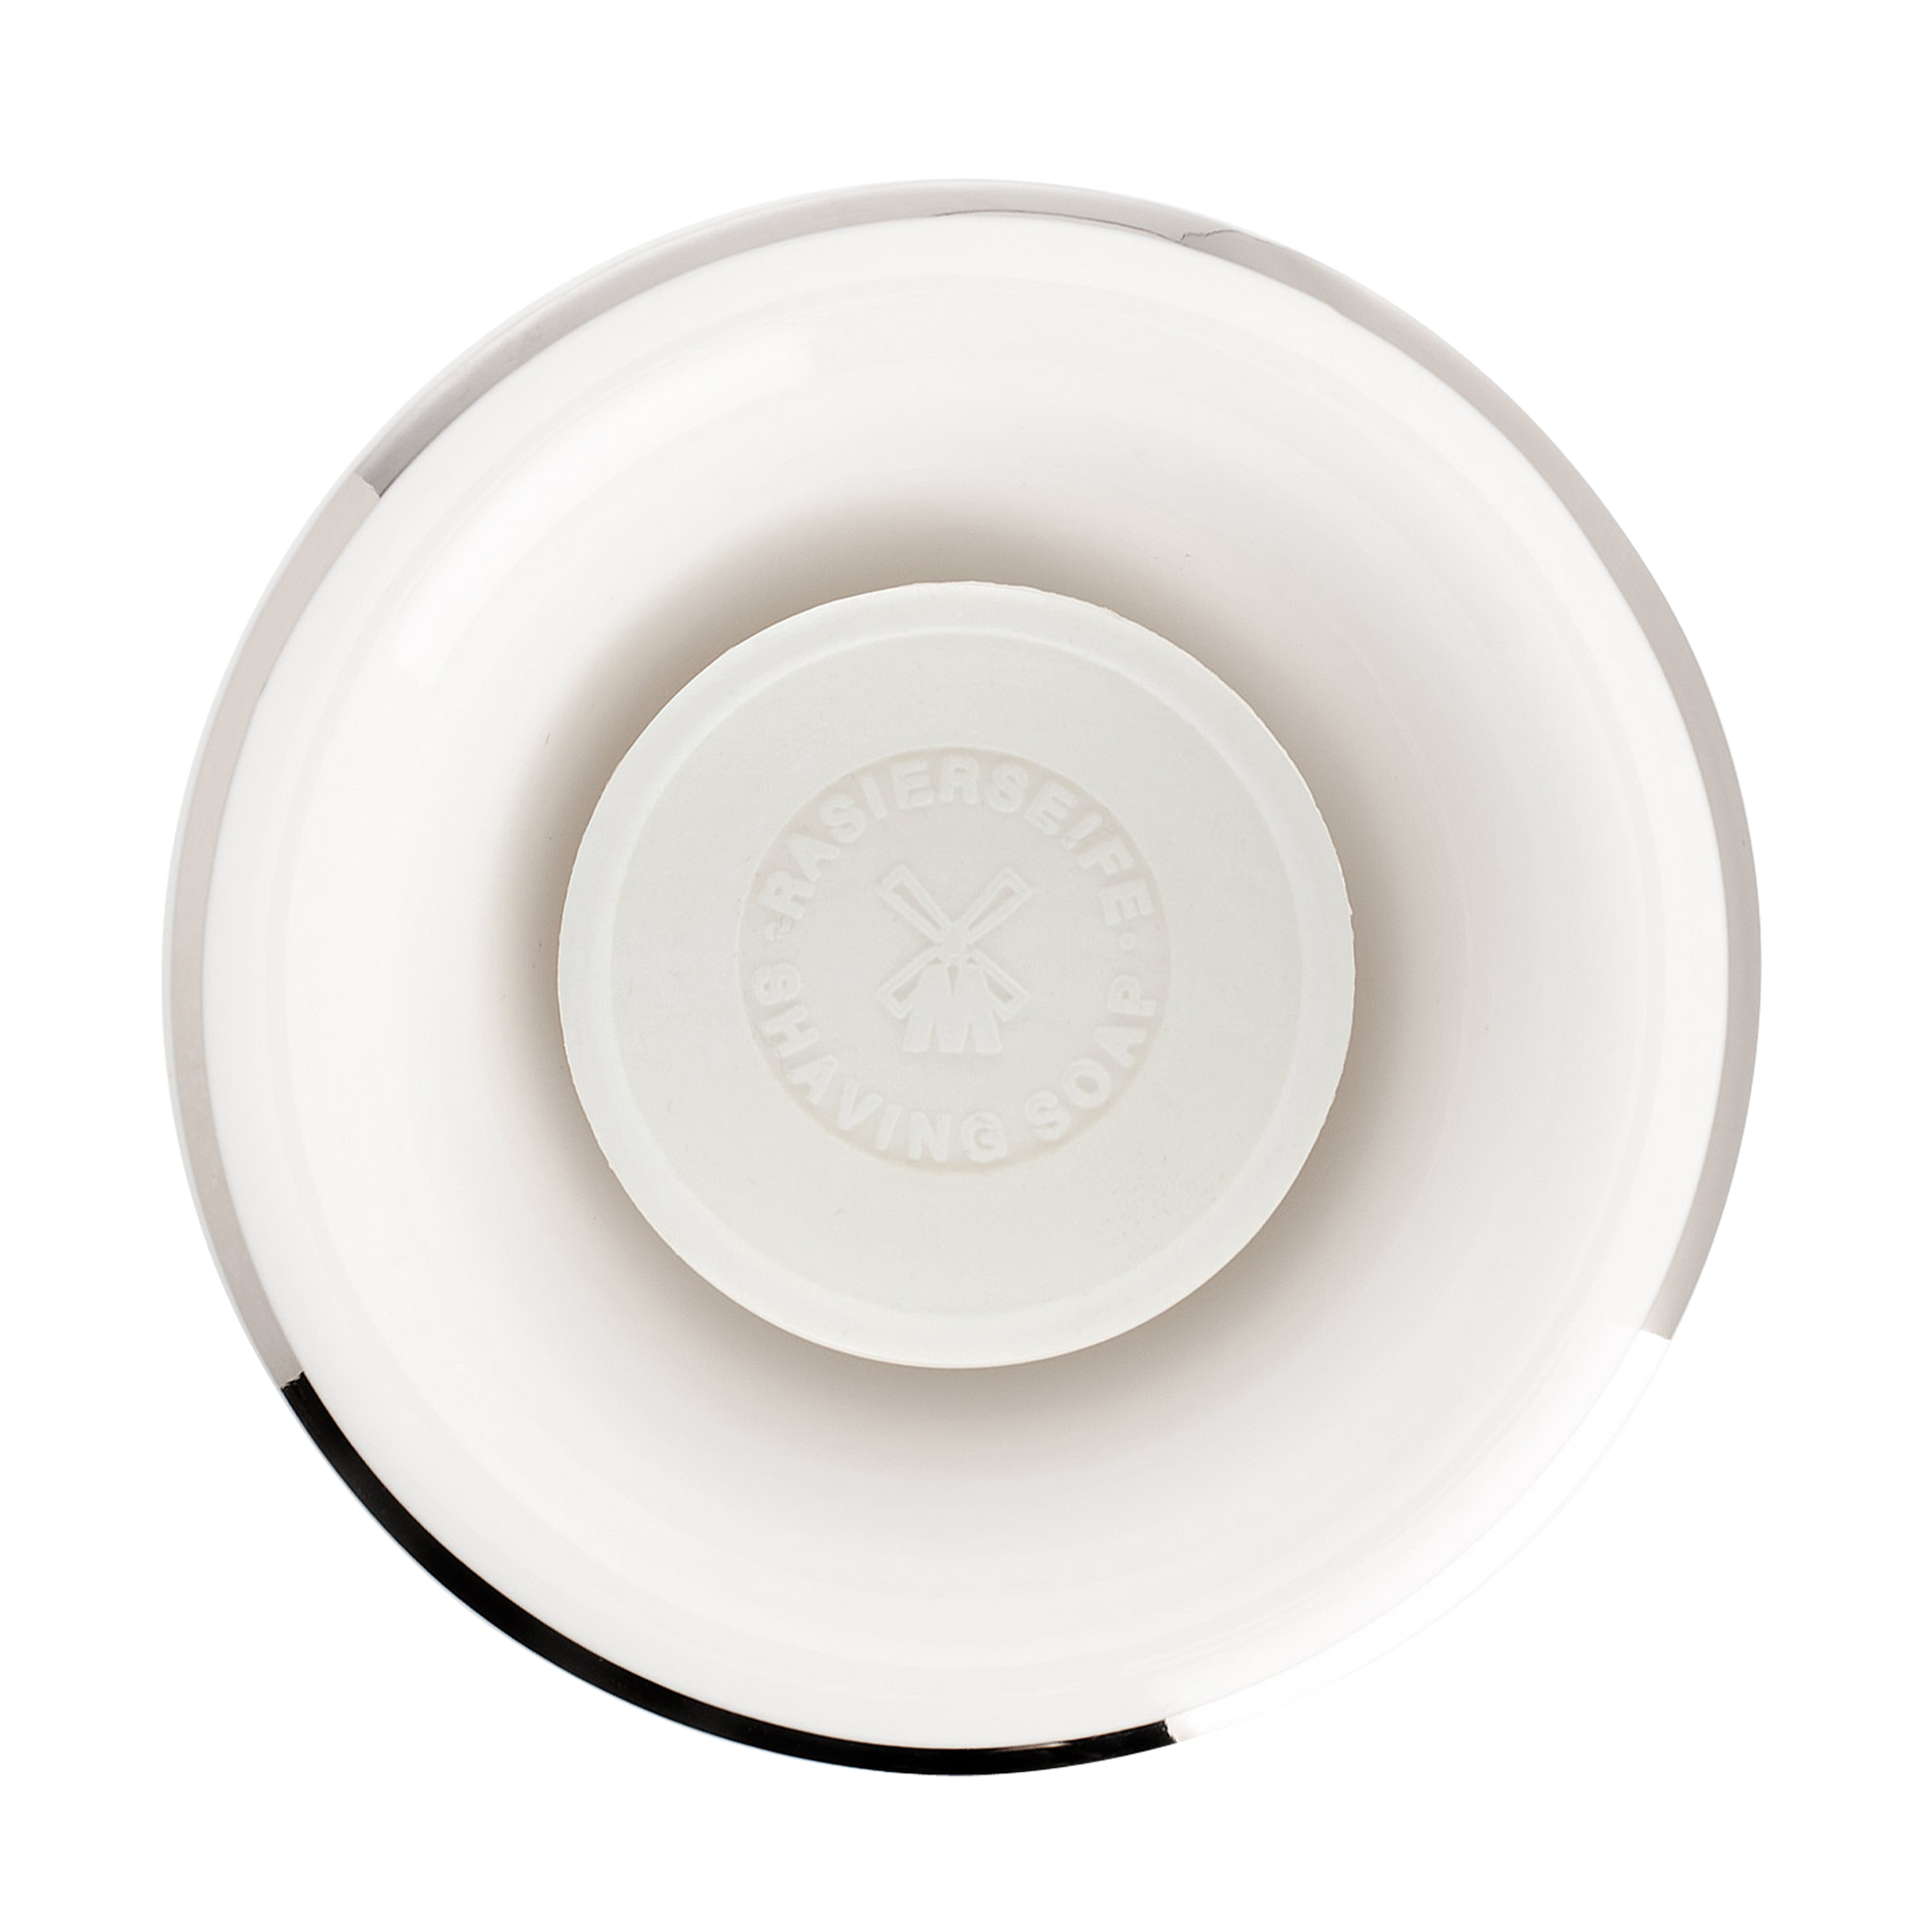 MUHLE White Porcelain Platinum Rim Shaving Dish: White porcelain finish shaving bowl featuring platinum rim.